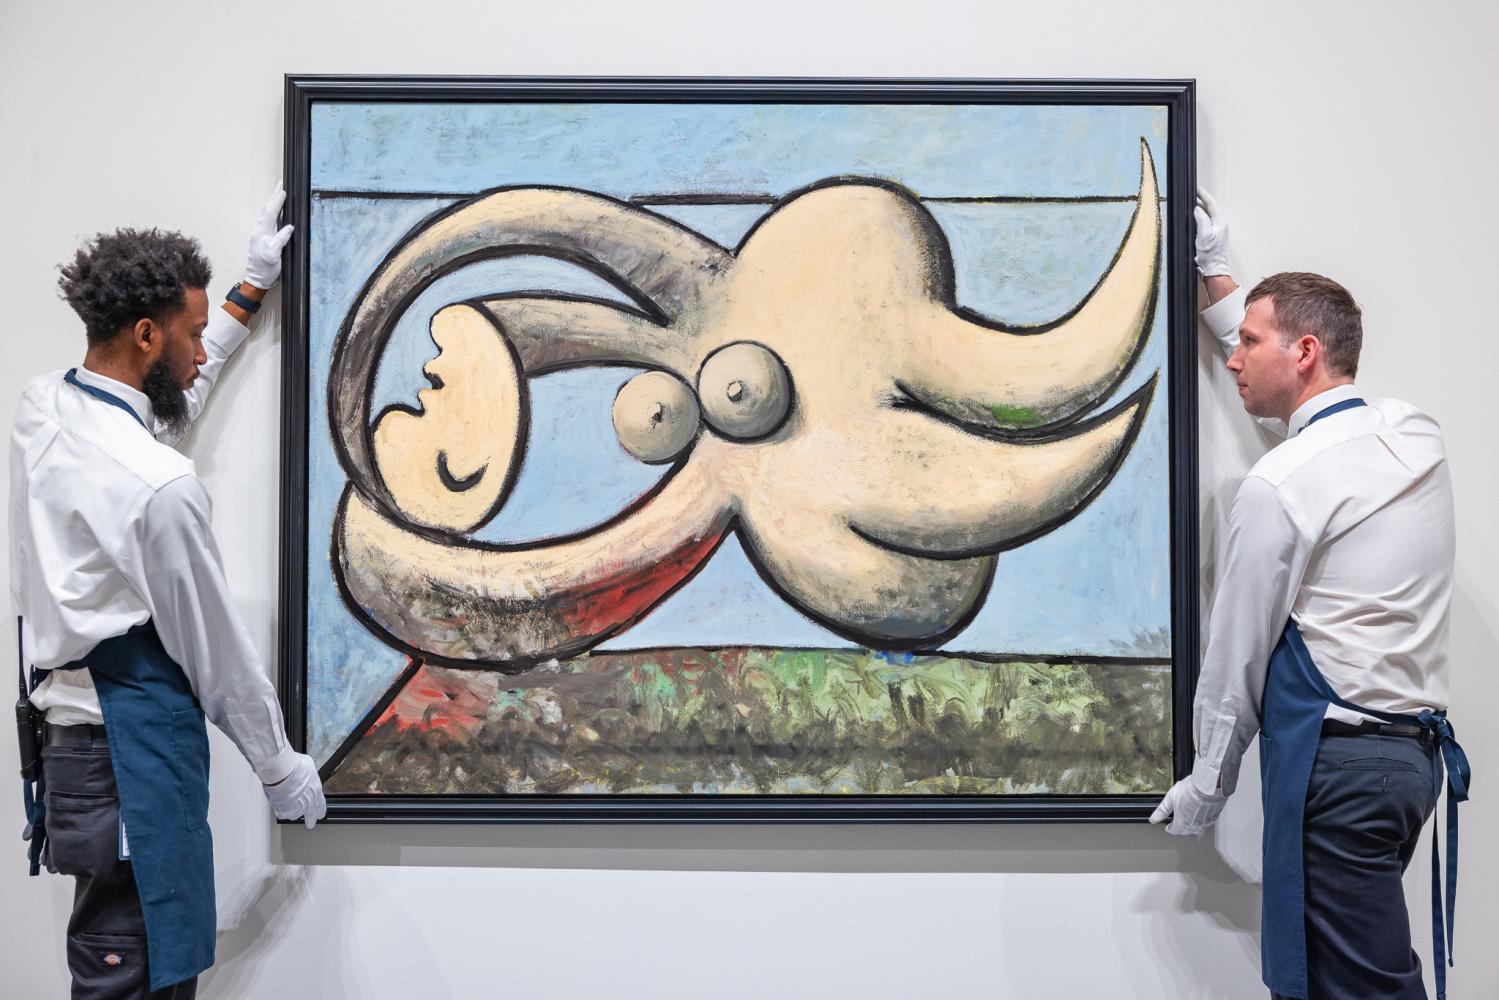 Das Gemälde "Femme nue couchée" (1932) von Pablo Picasso im Auktionshaus Sotheby's in New York auf